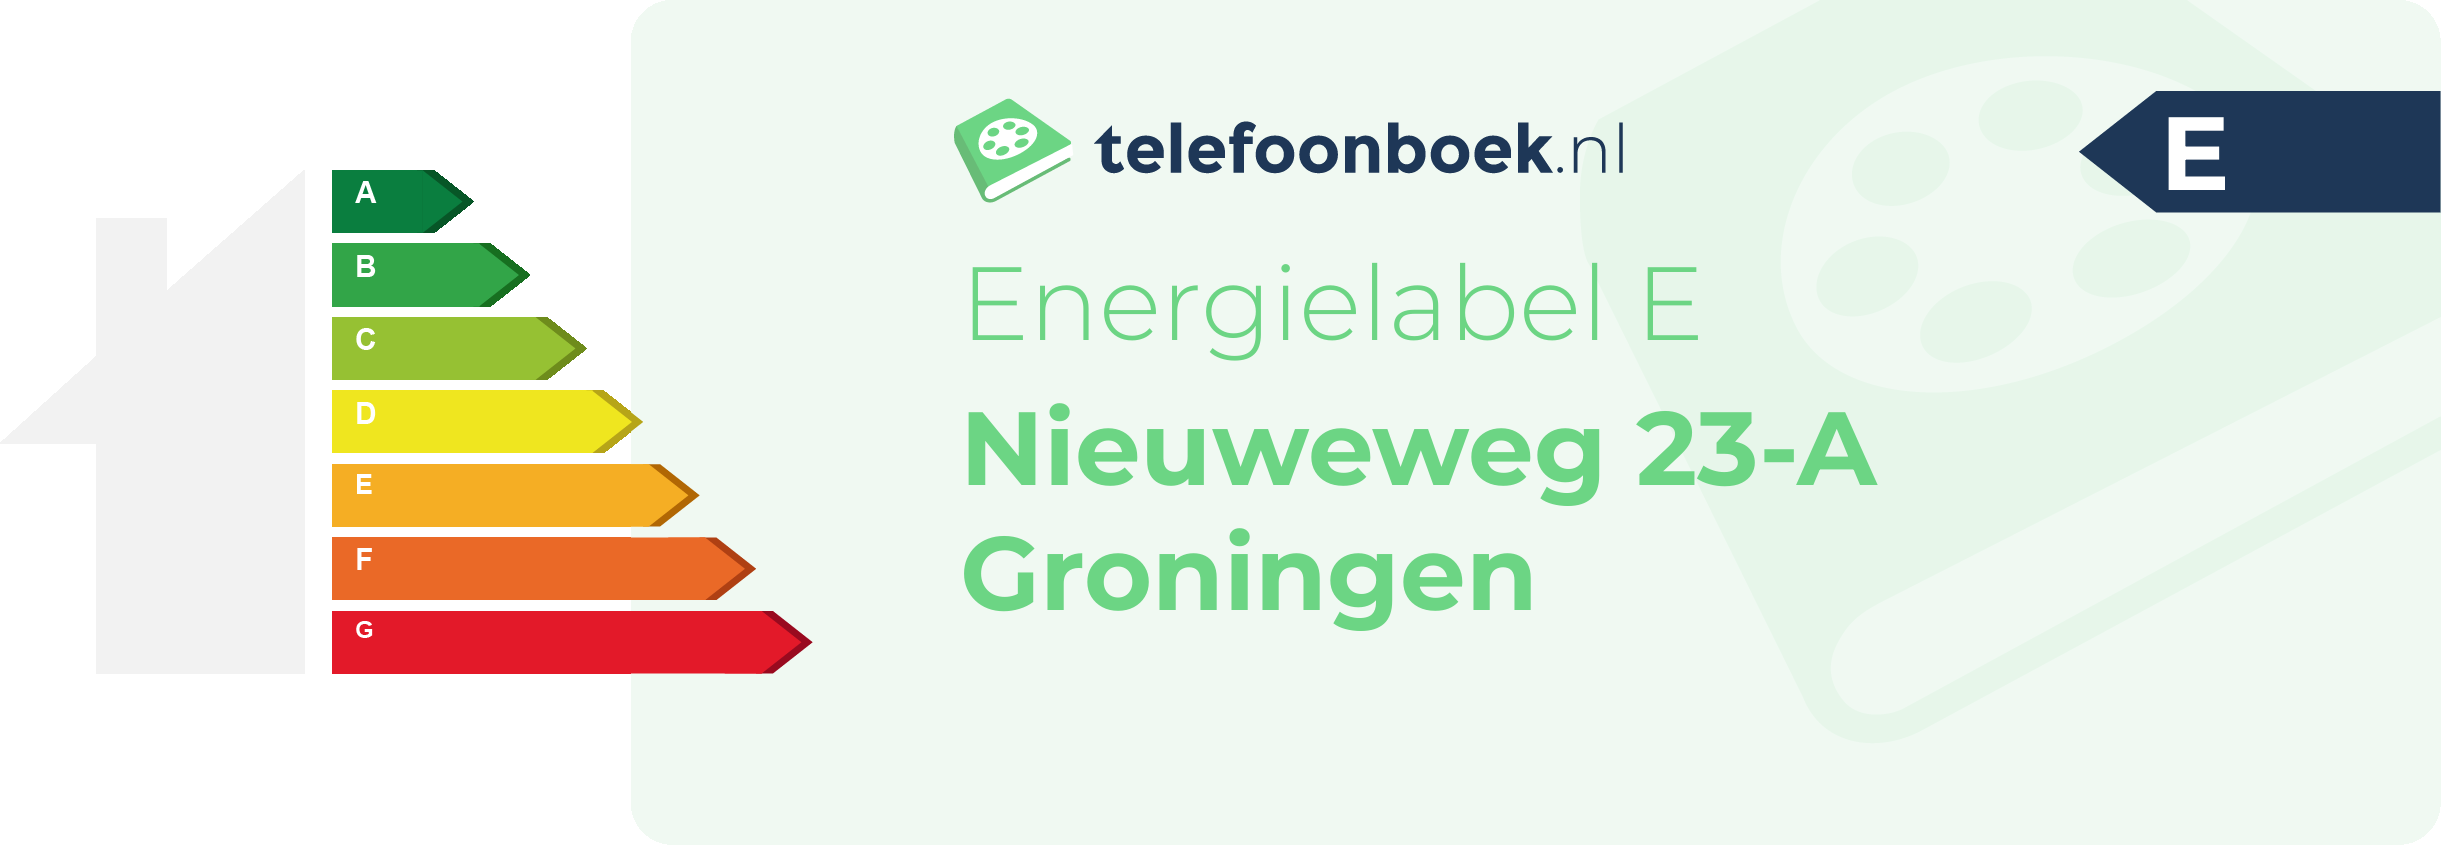 Energielabel Nieuweweg 23-A Groningen